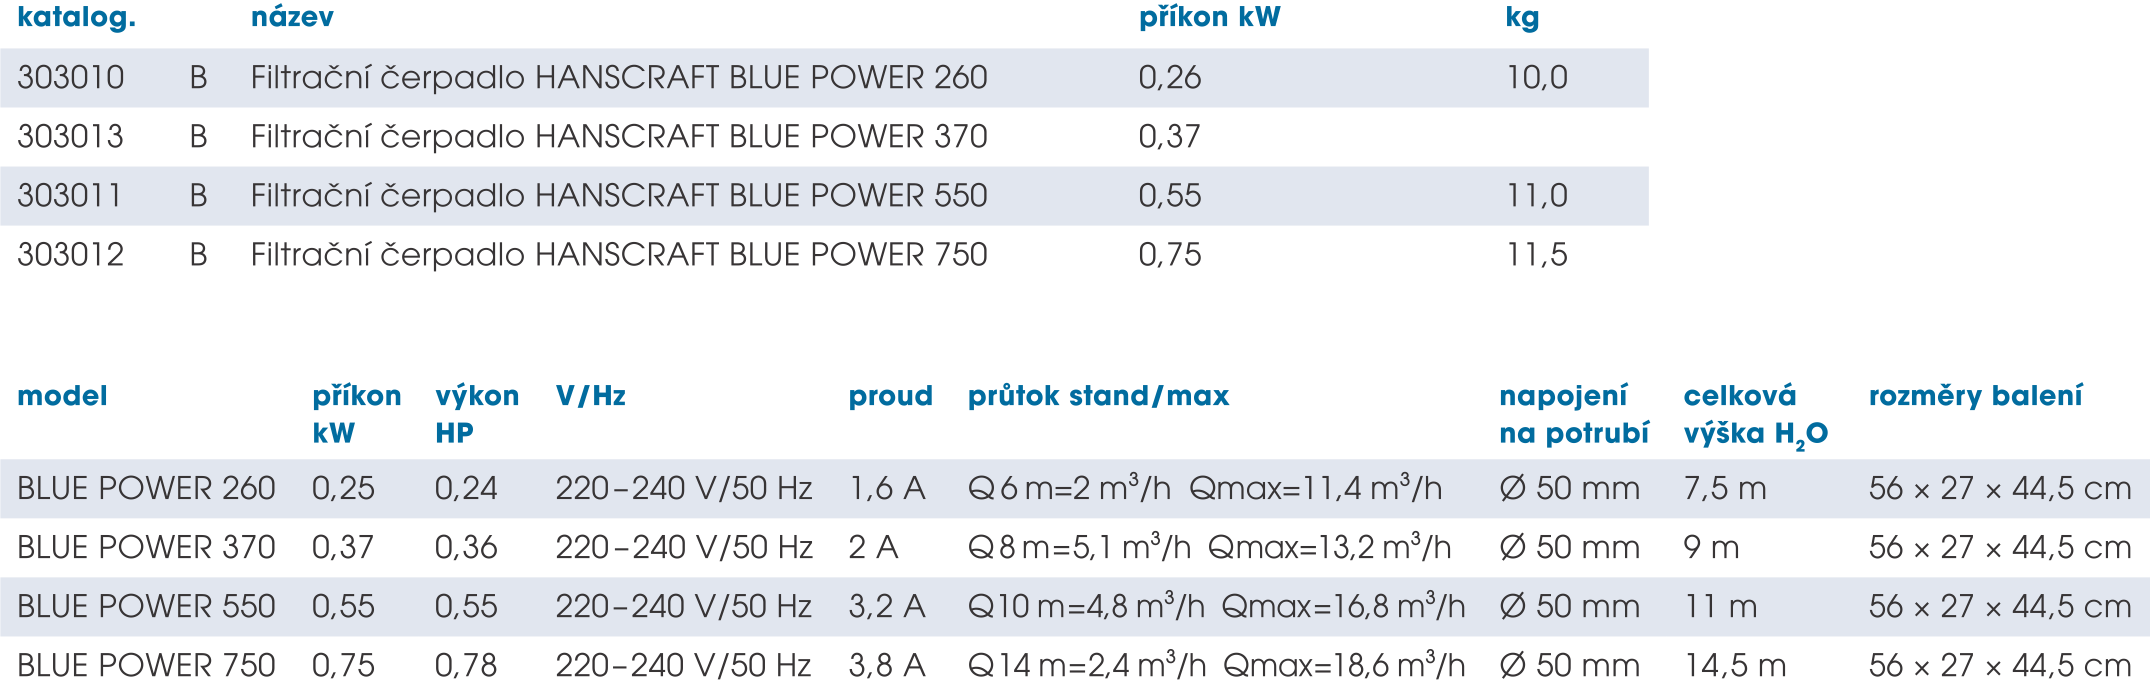 Hanscraft Blue Power parametre